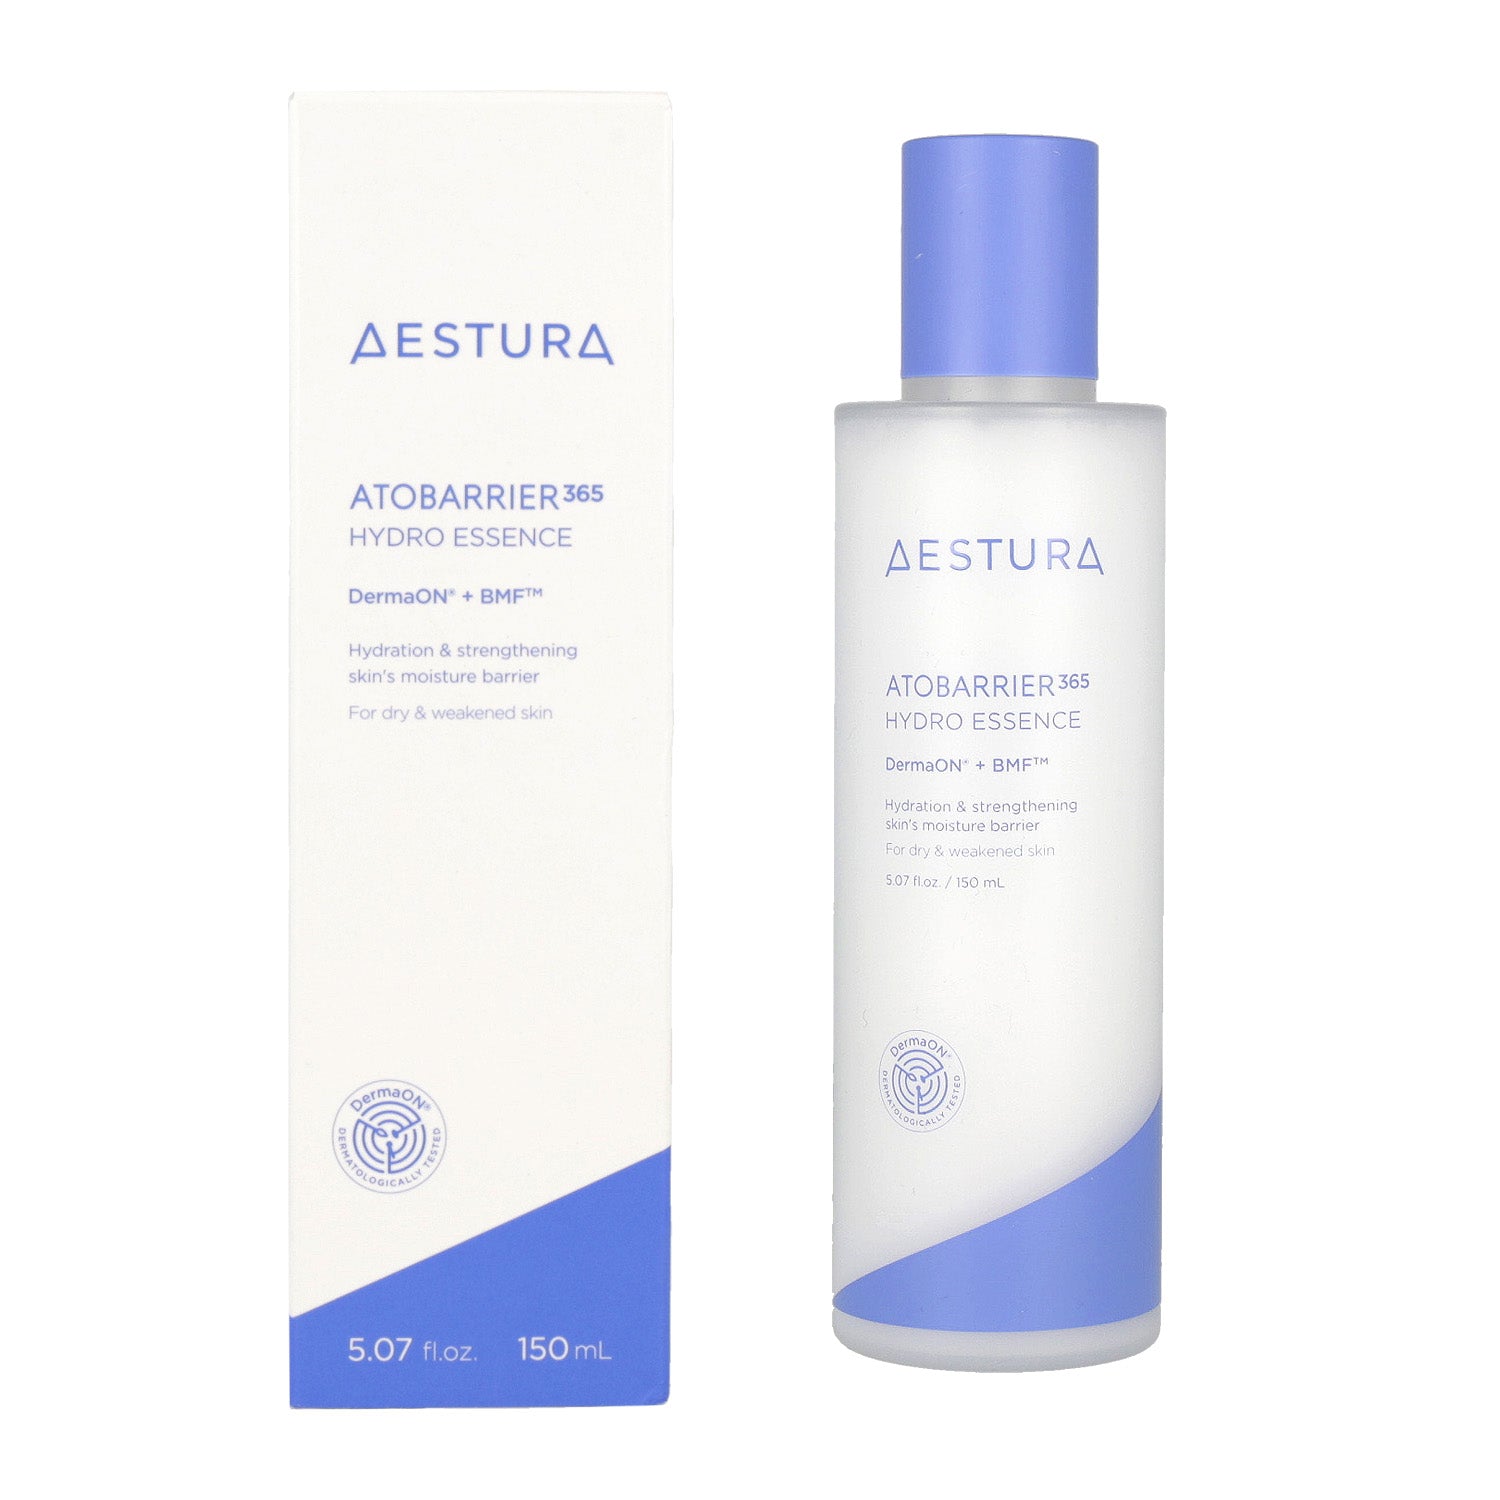 AESTURA Atobarrier 365 Hydro Essence (150ml / 200ml) - DODOSKIN